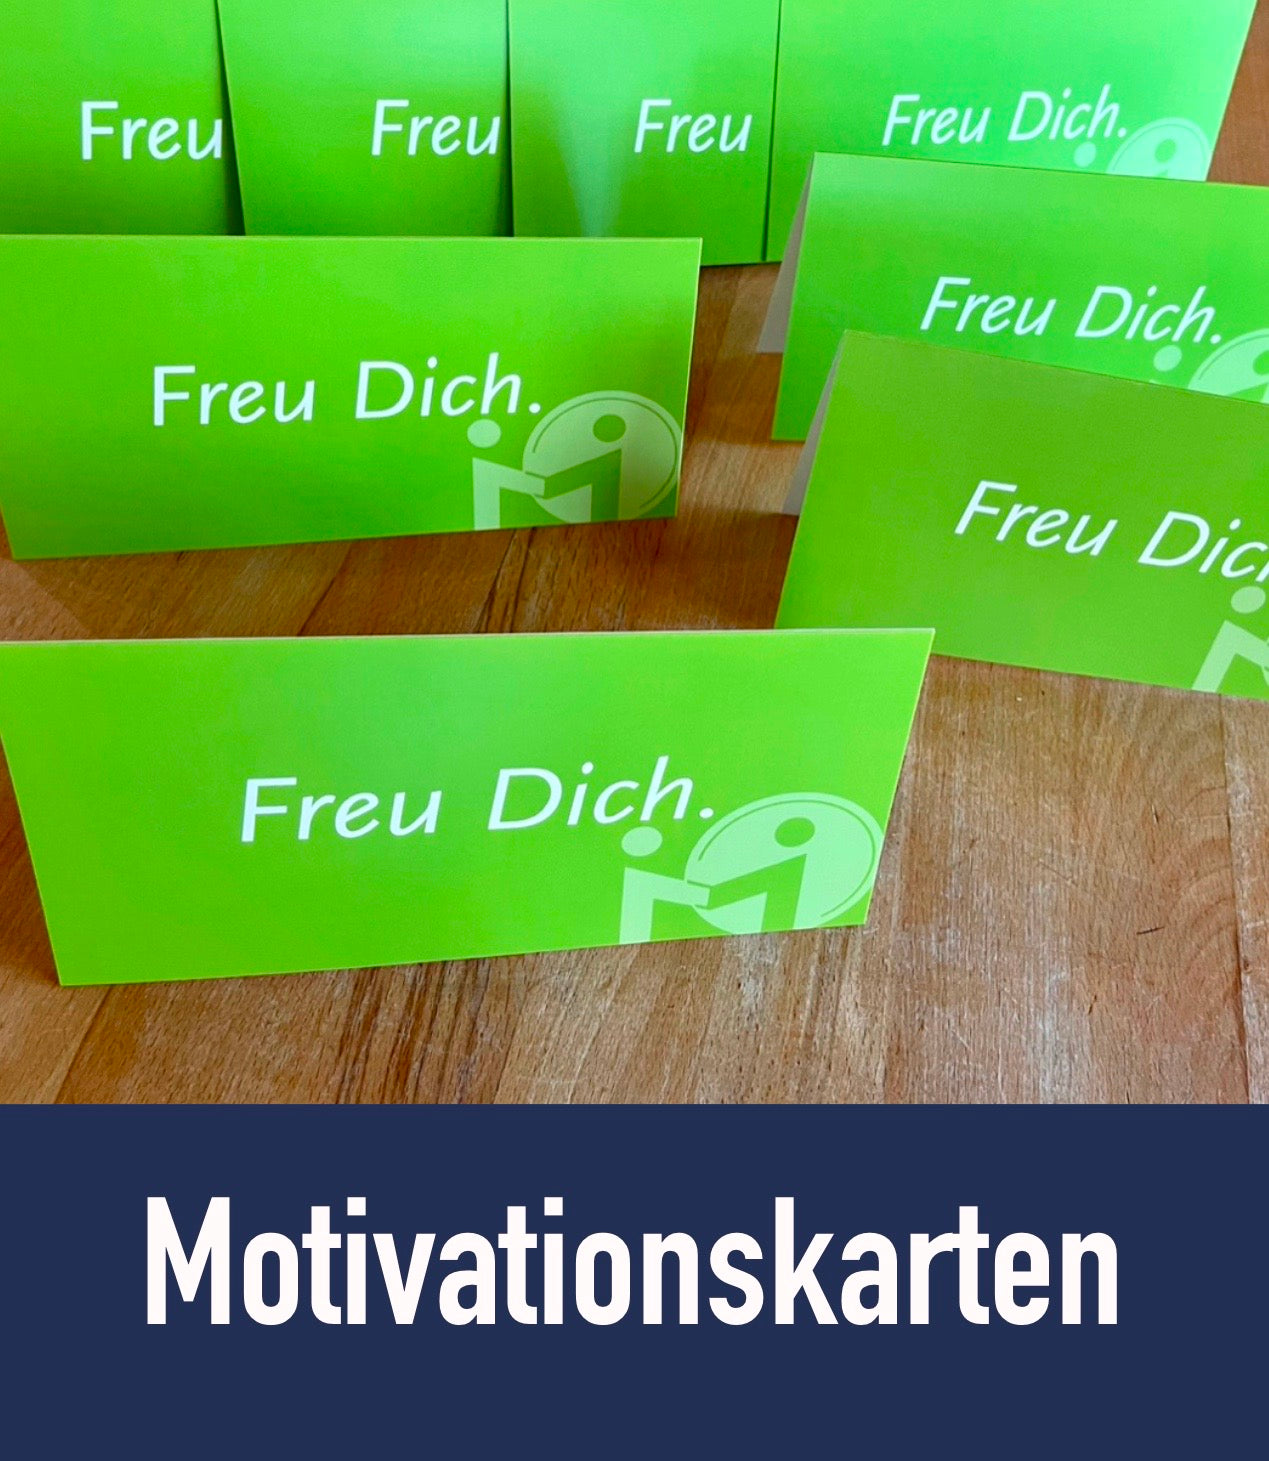 Motivationskarte "Freu Dich!"